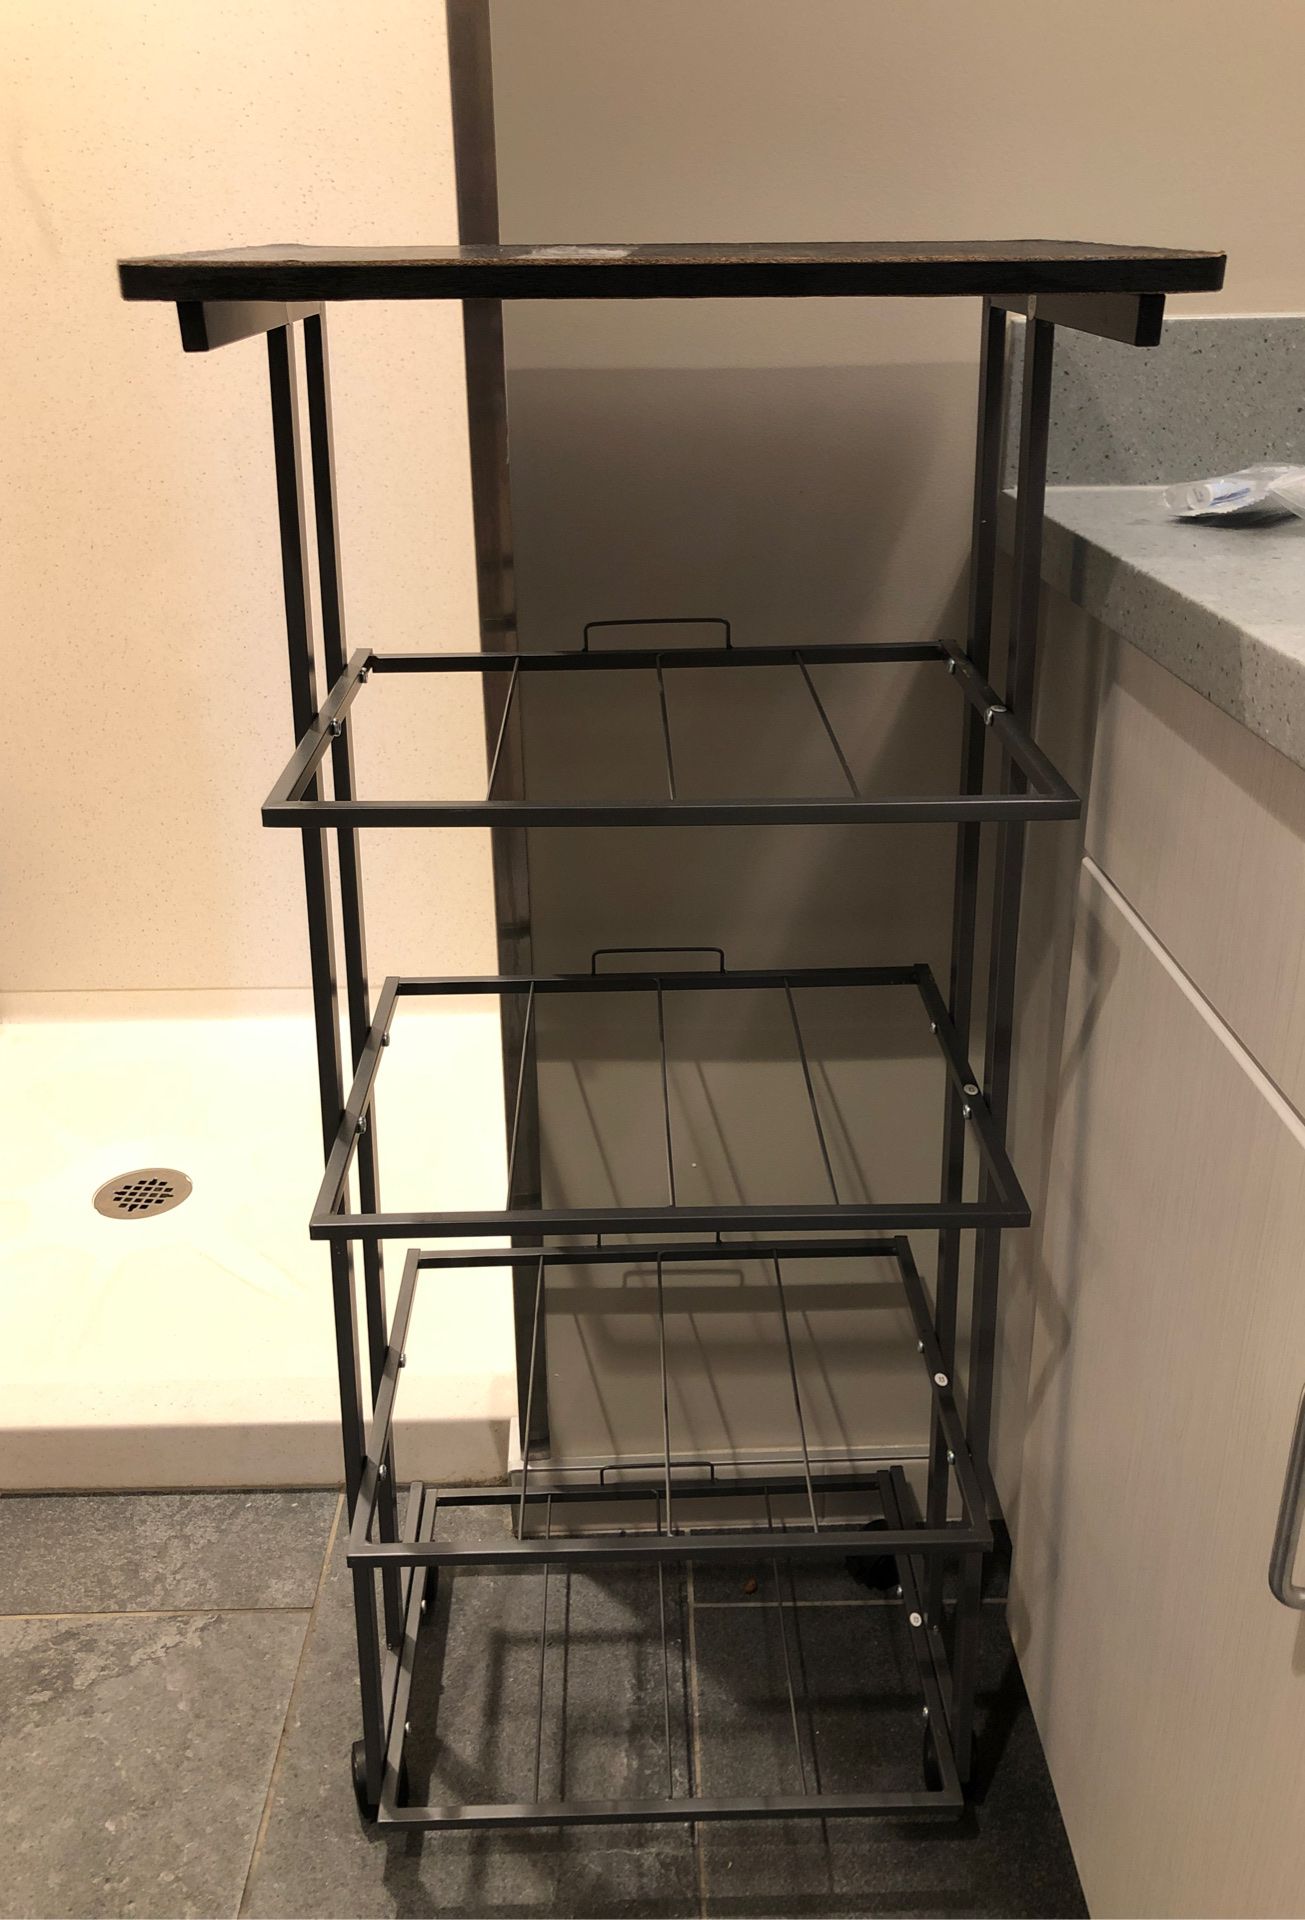 Bathroom or office shelving/ shelves/ rack